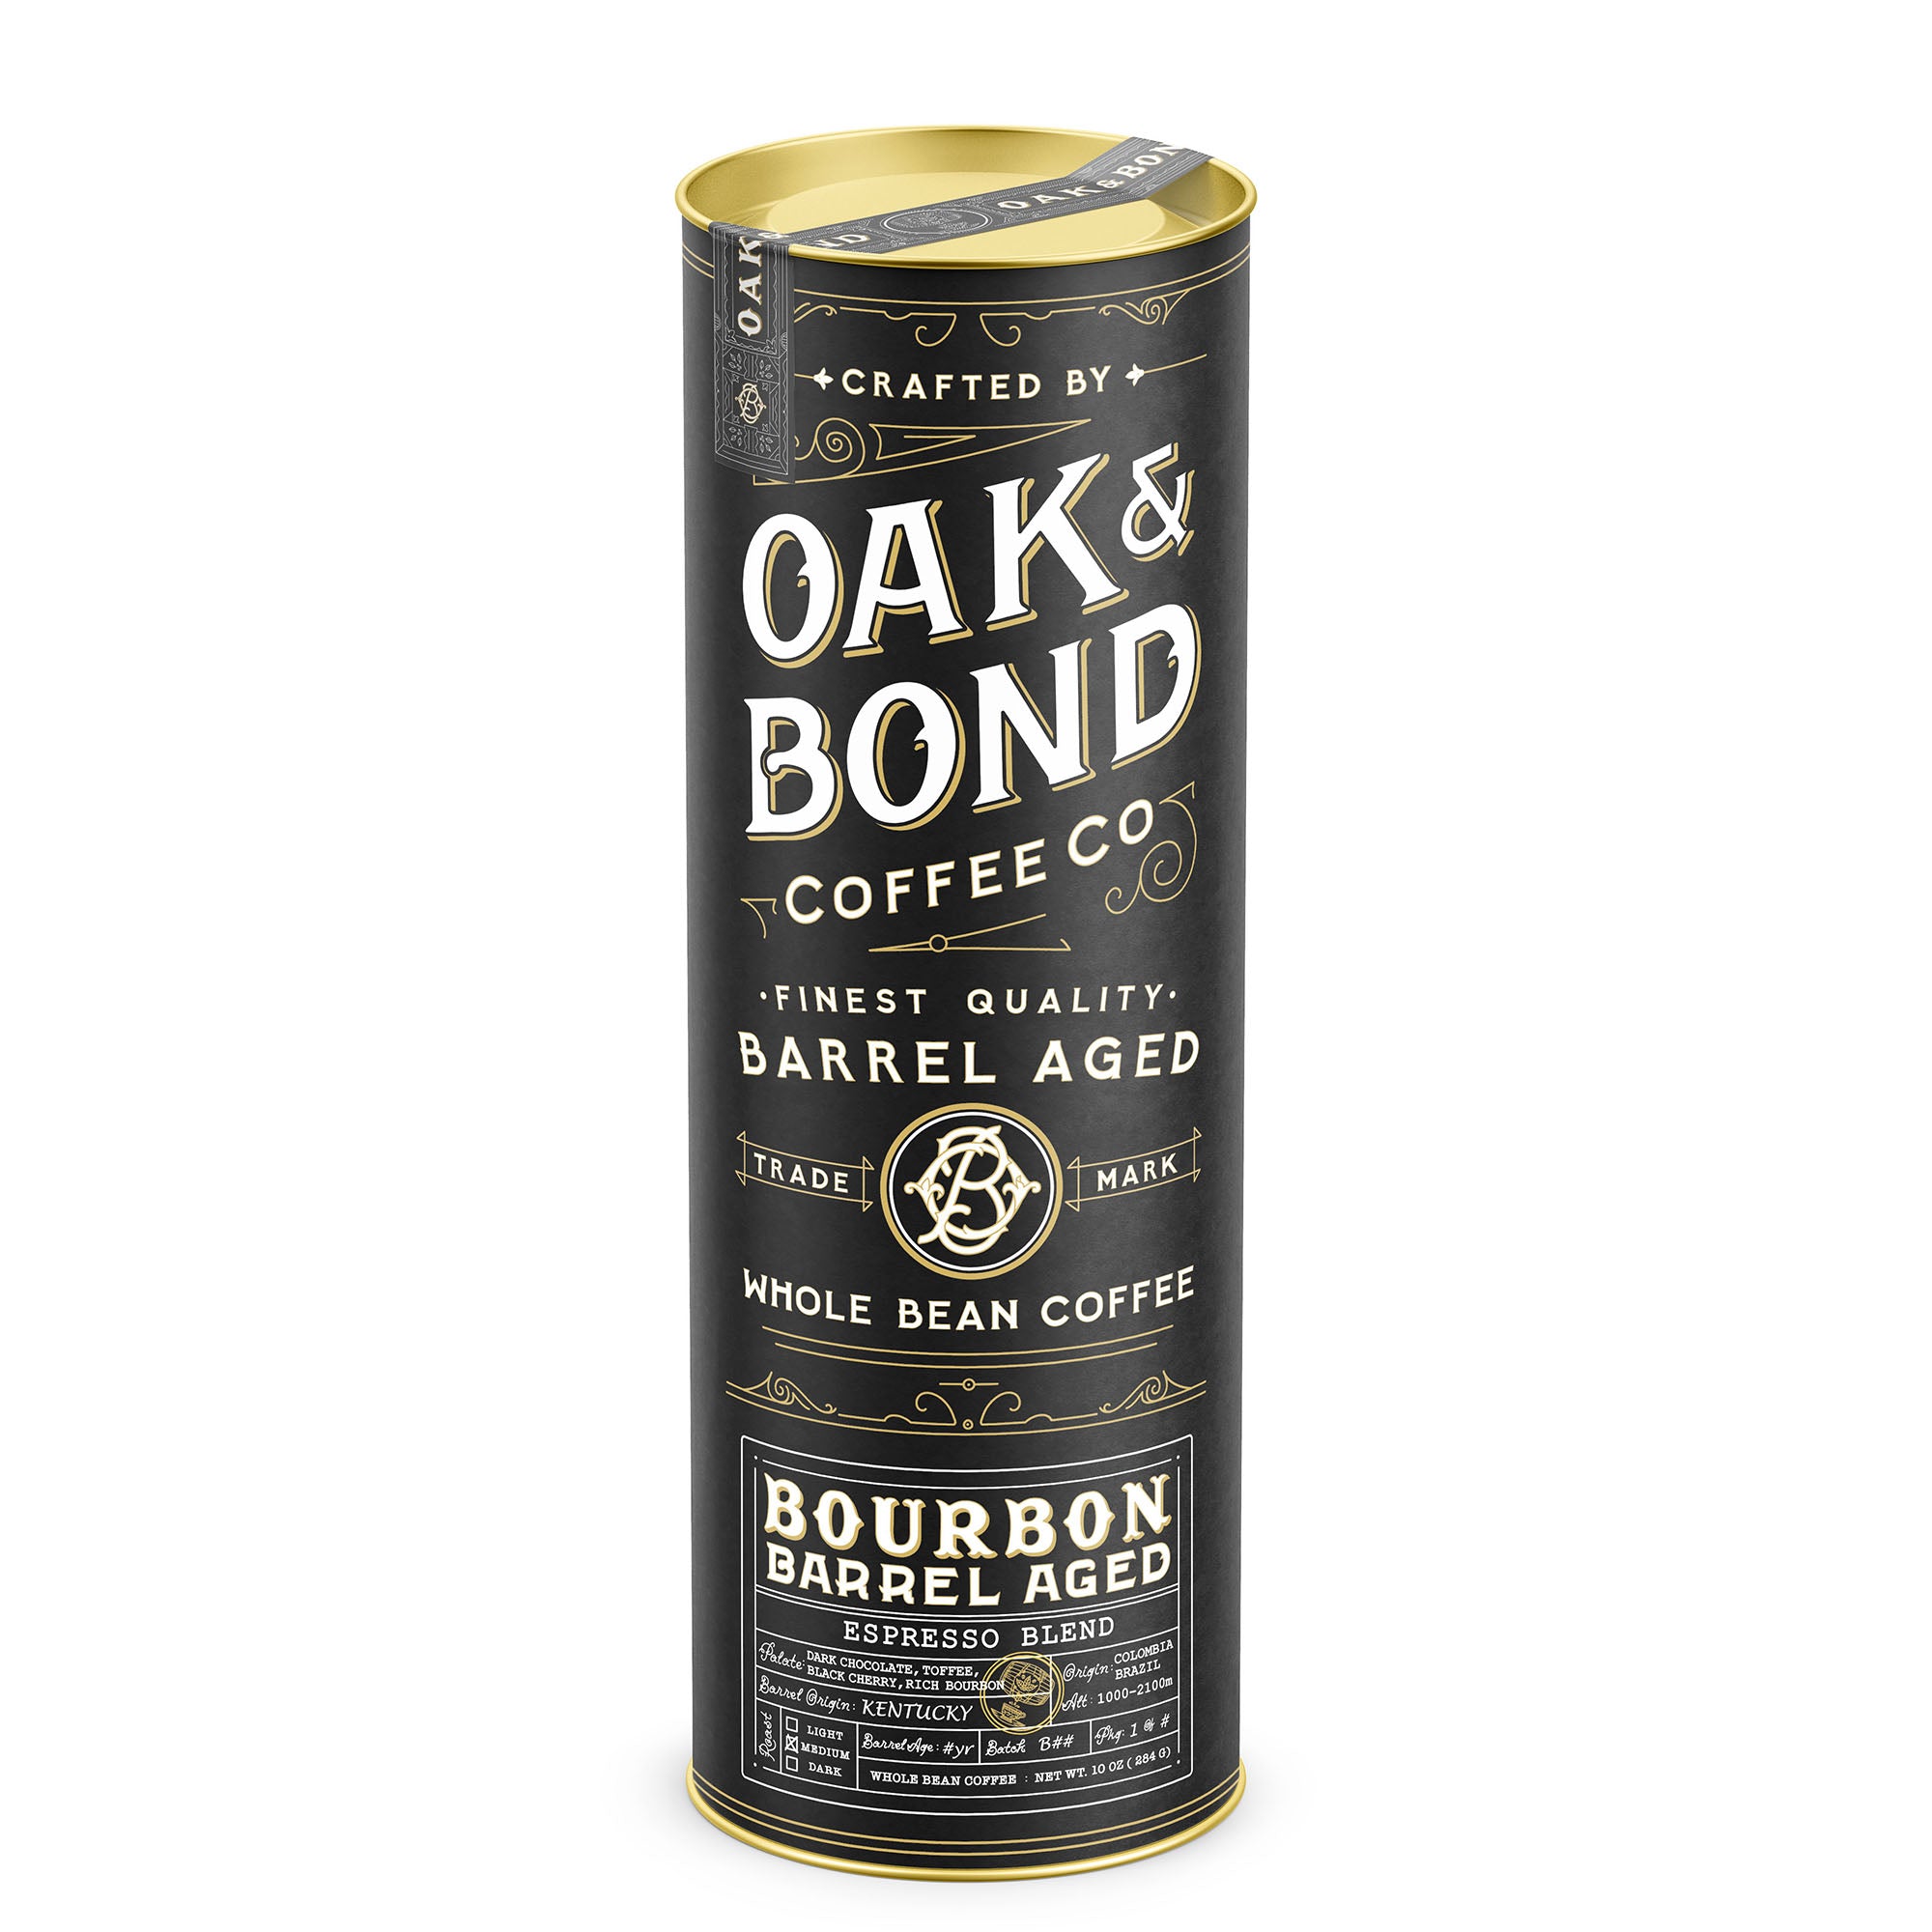 Gran Espresso Premium Bourbon Blend Grano 500G. 